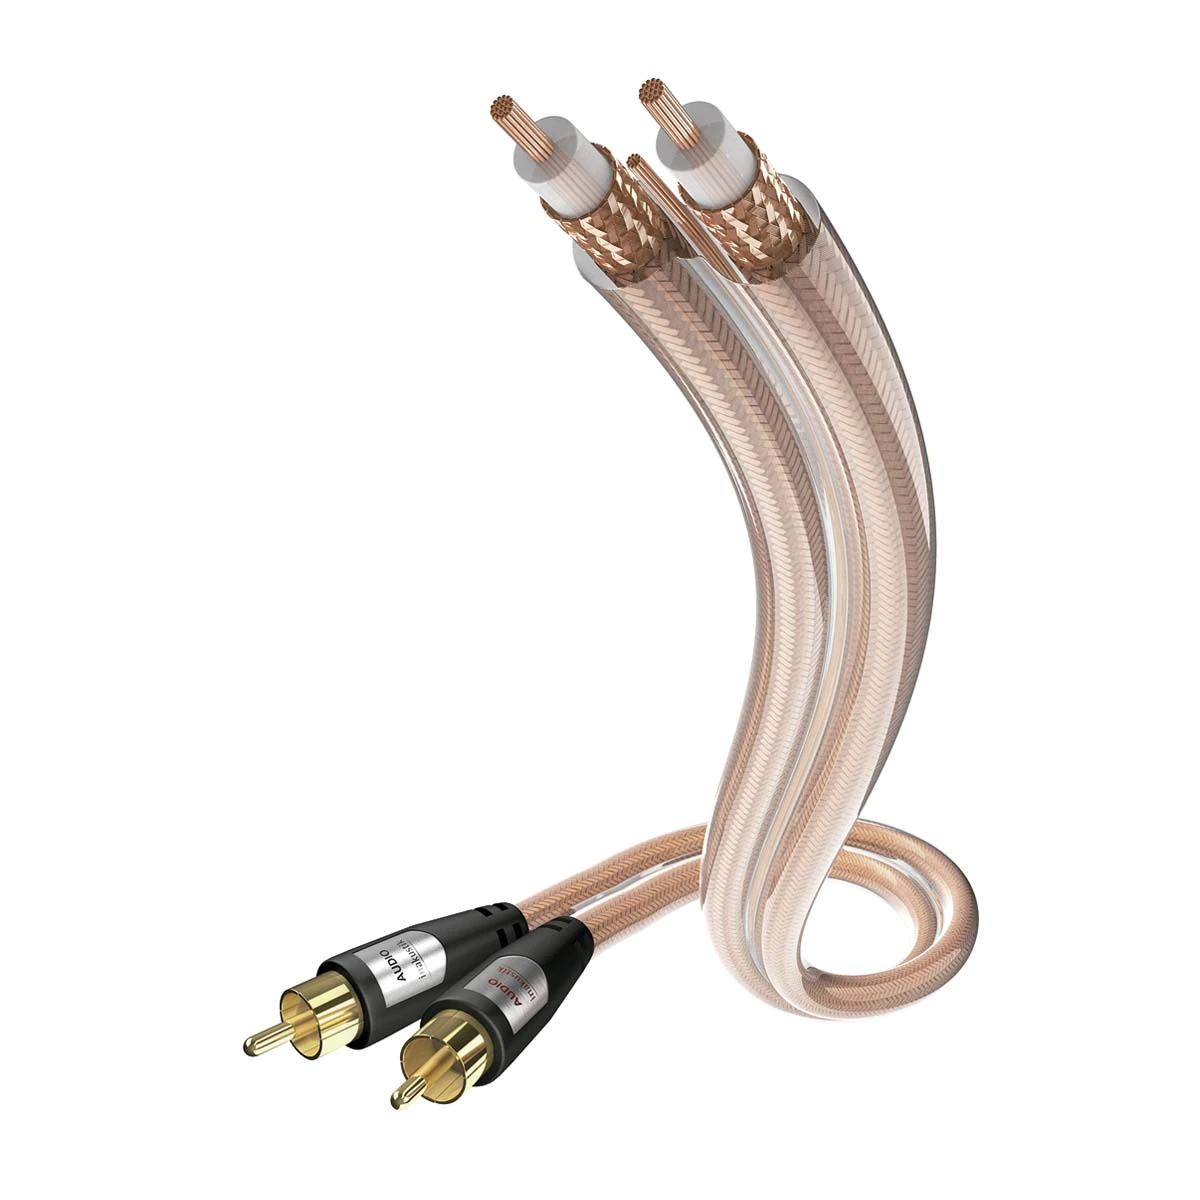 Cable de interconexión Inakustik Star Audio Cable de 0,75 m